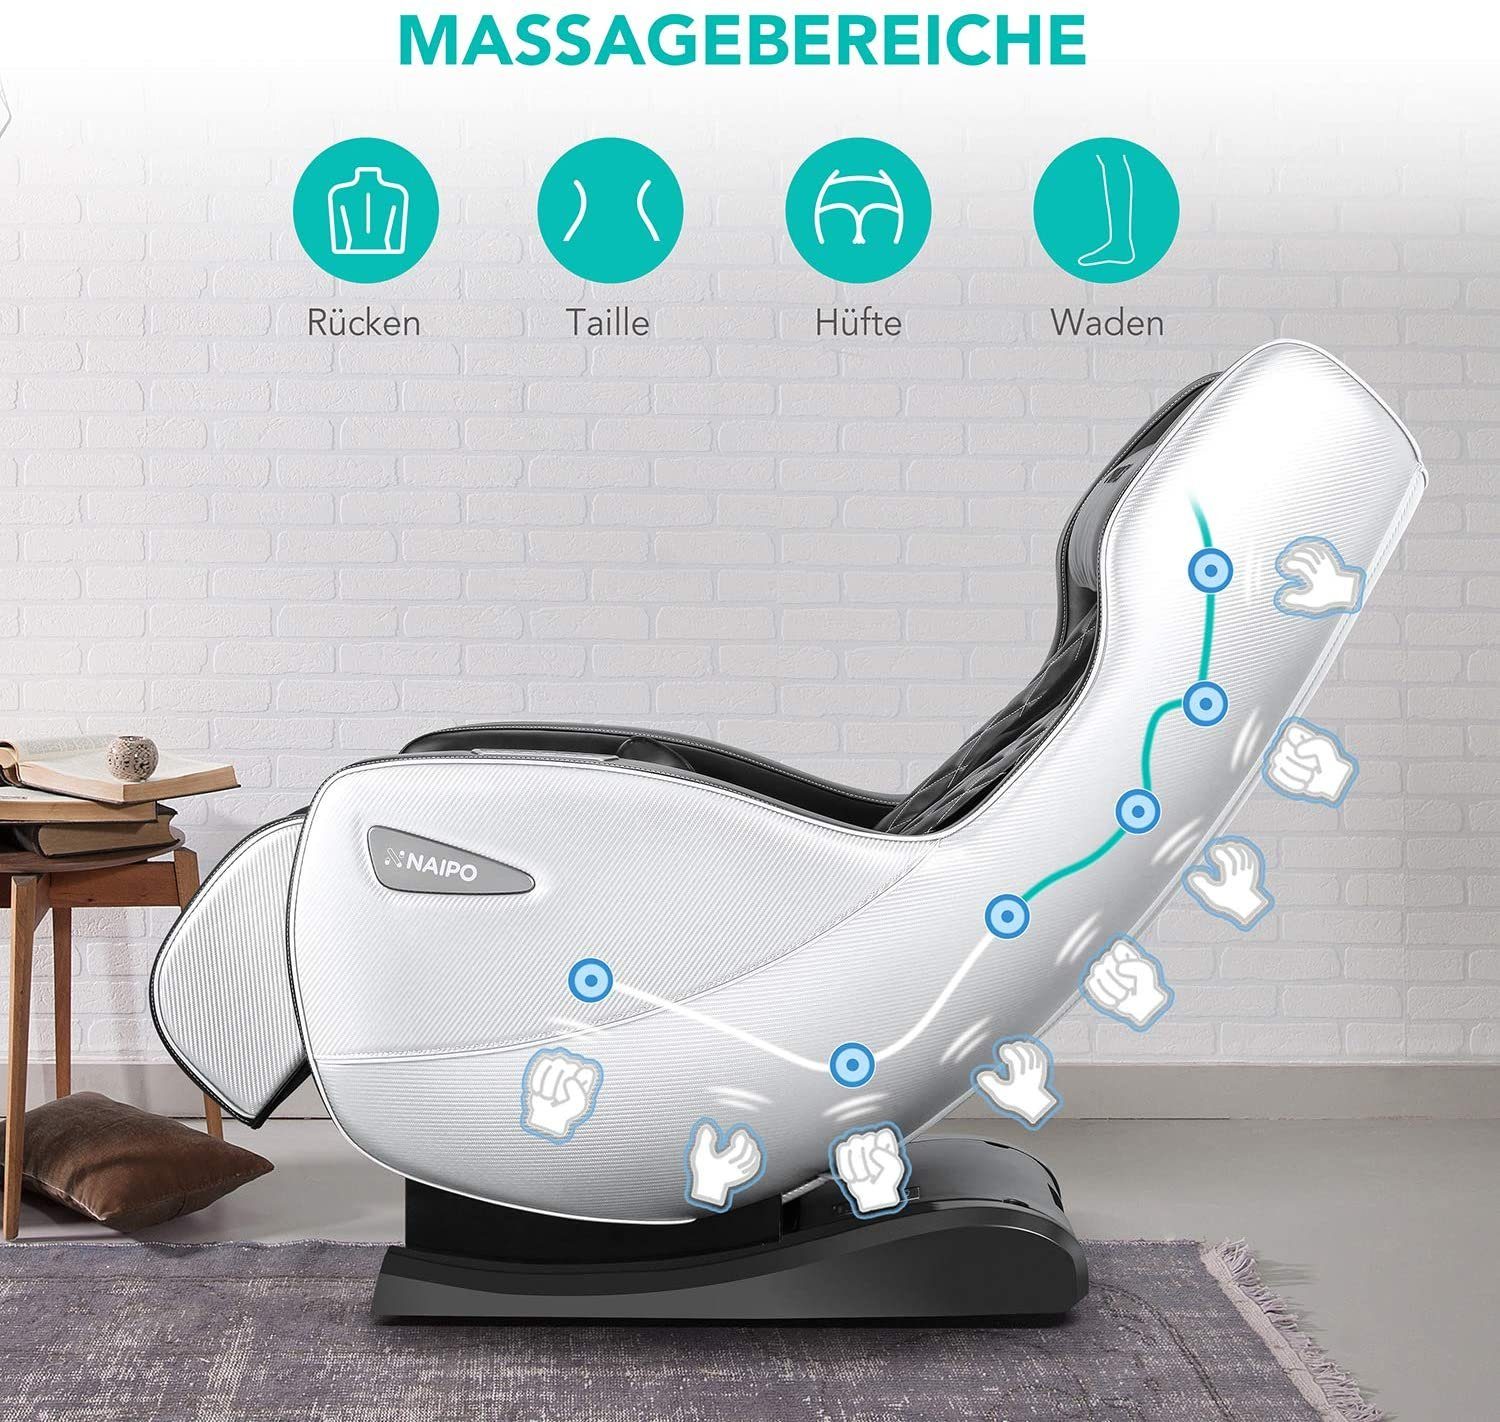 NAIPO Massagesessel, Platzsparend Beige-Dunkelbraun-Aufbauservice Massagestuhl mit Bluetooth, Liegeposition